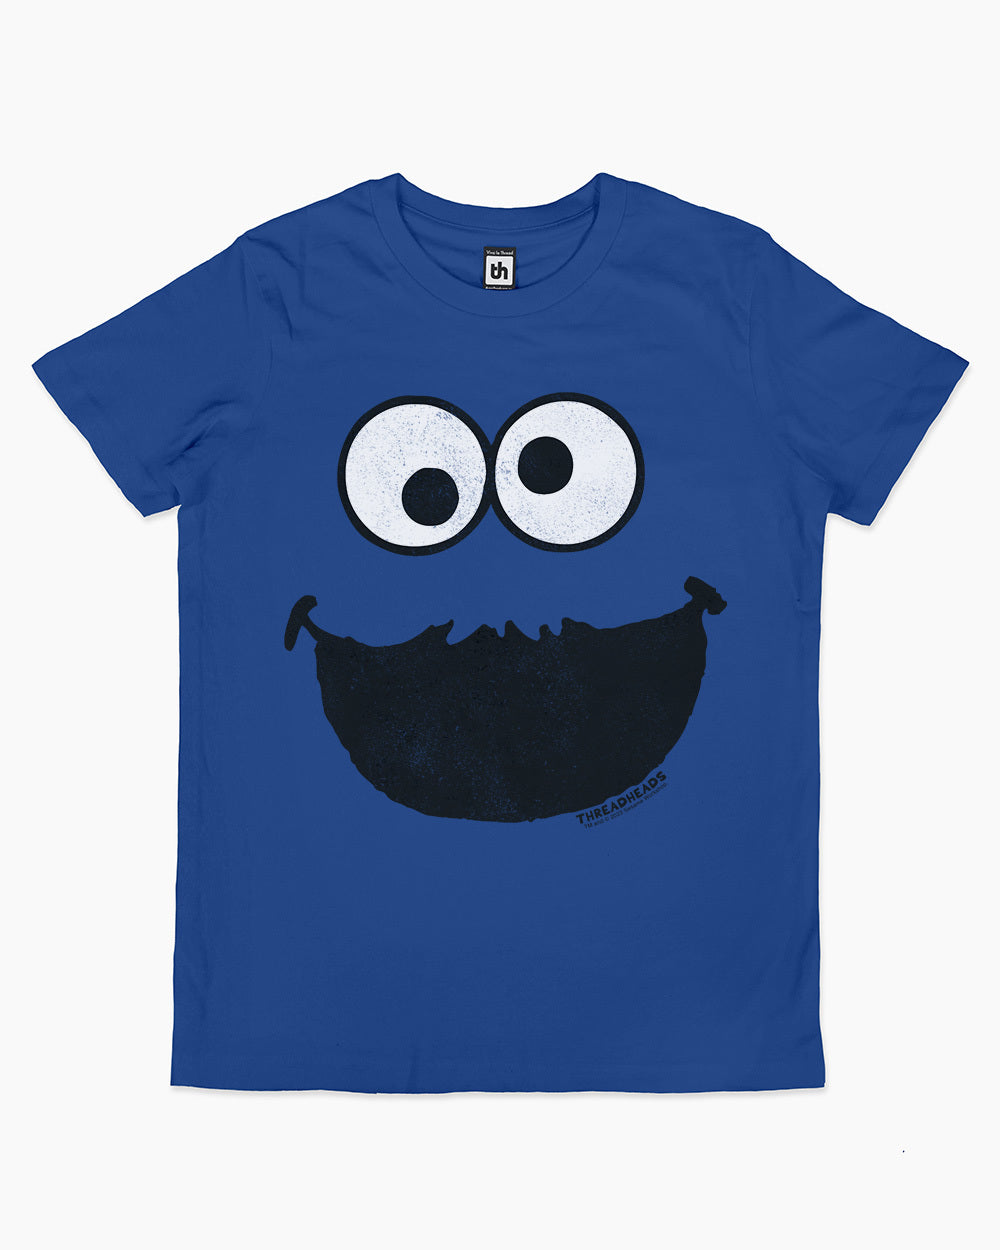 Cookie Monster Face Kids T-Shirt | Official Sesame Street Merch ...